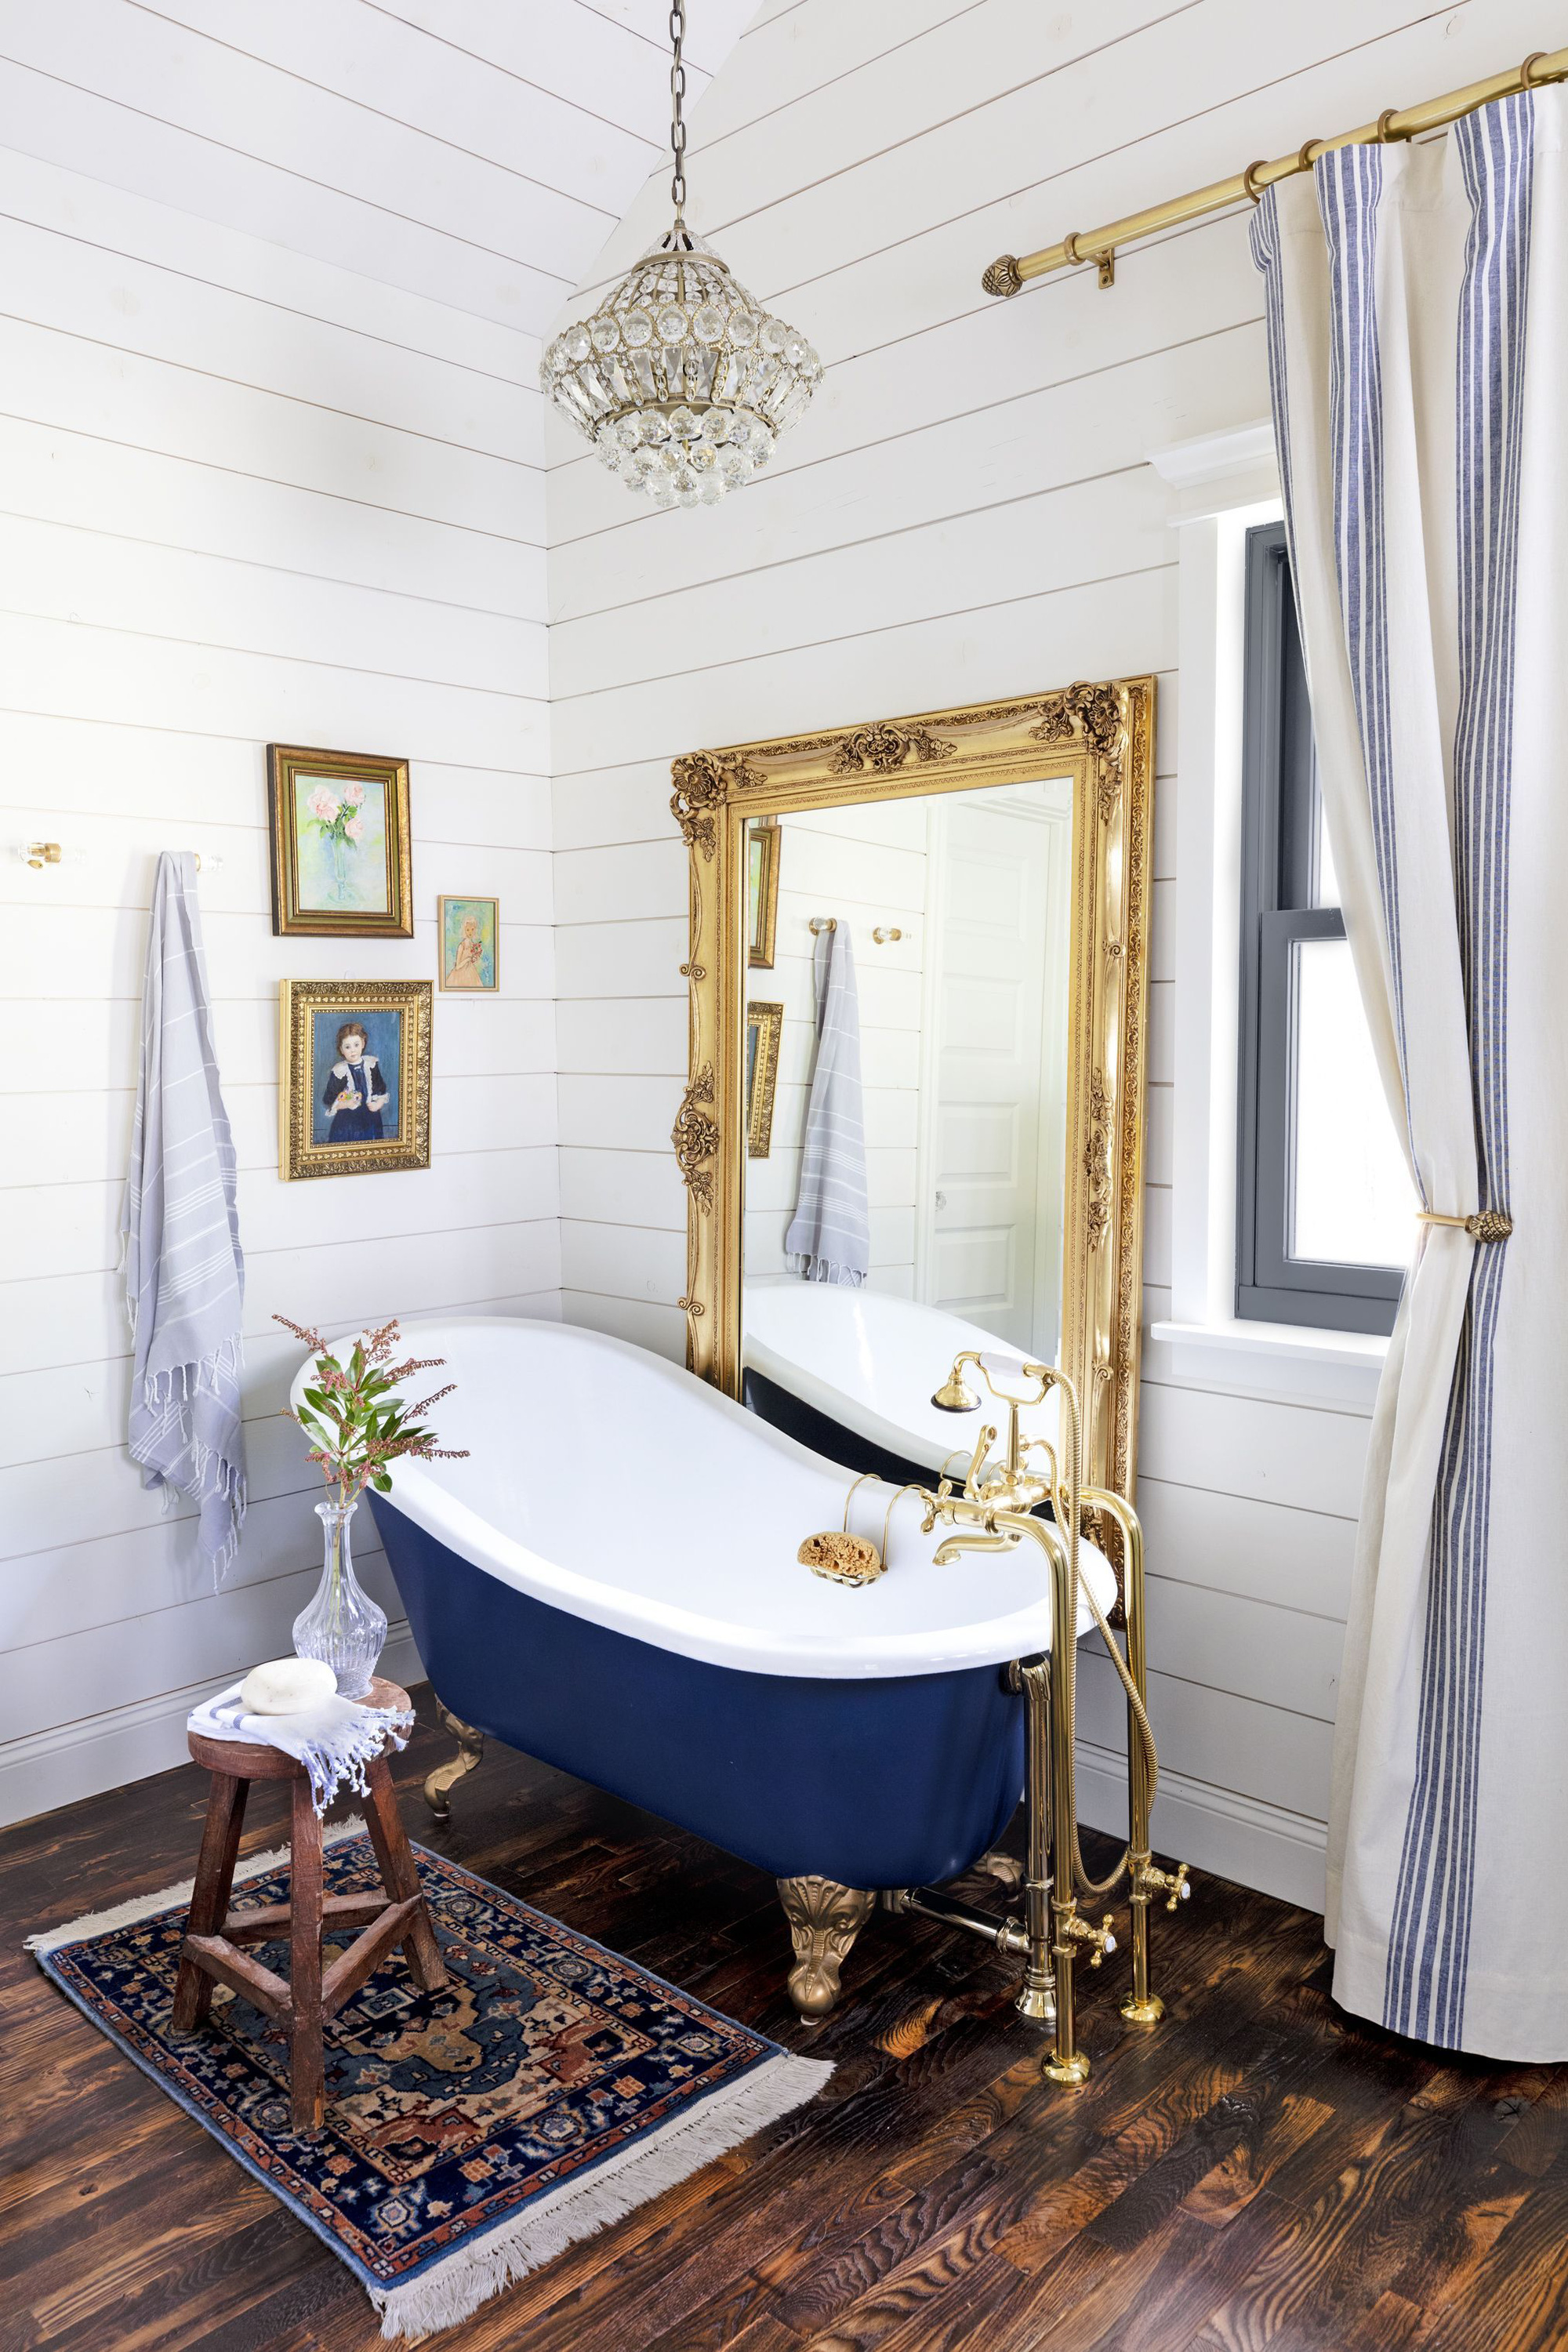 Cho căn phòng tắm gia đình thêm phần rực rỡ với điểm nhấn là chiếc bồn tắm đầy màu sắc - Ảnh 8.